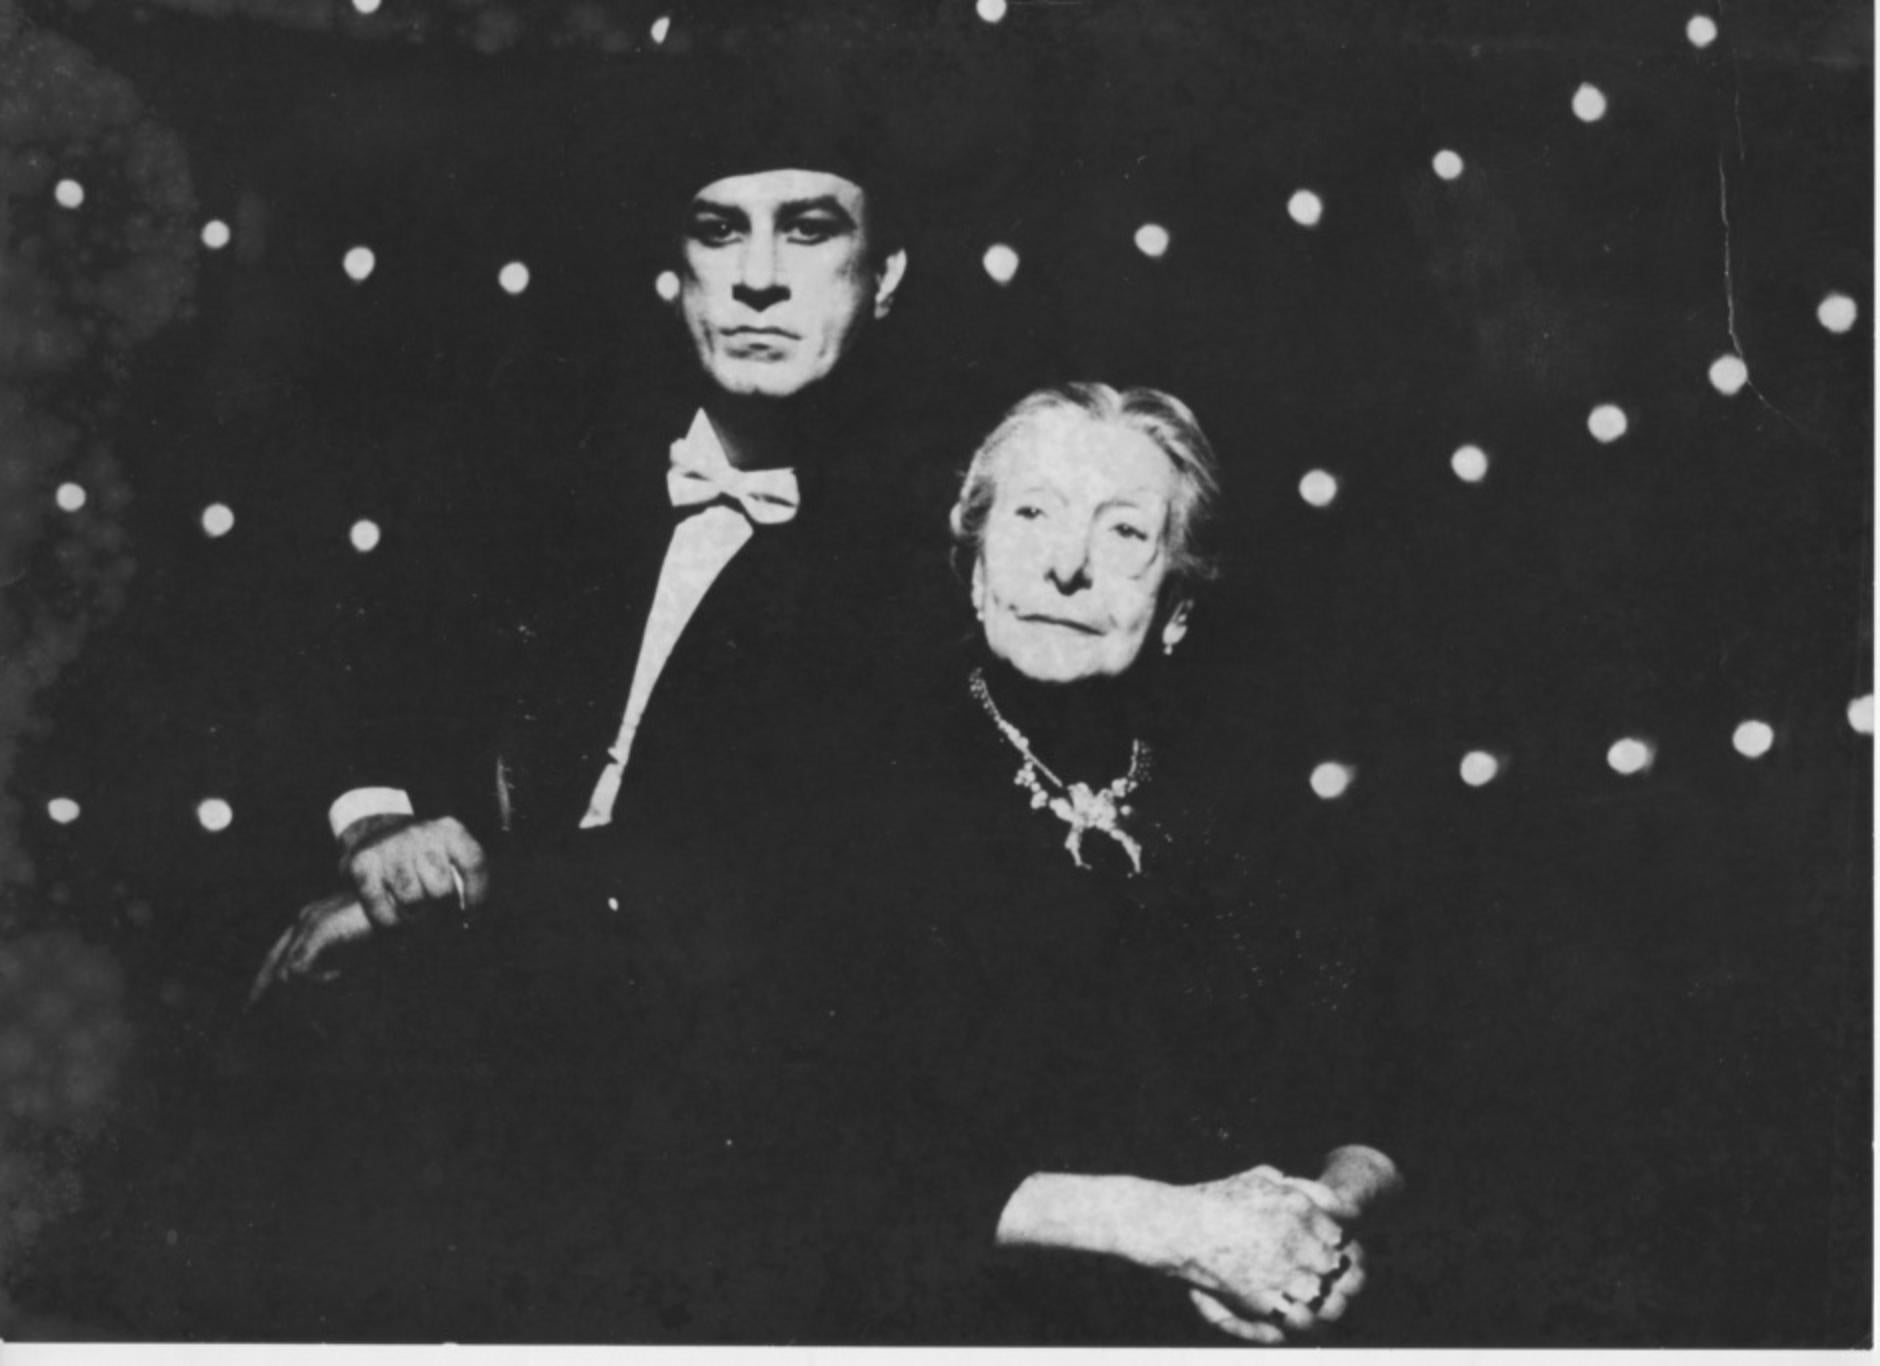 Unknown Figurative Photograph - The Actors Paola Borboni and Sebastiano Lo Monaco - Vintage Photo -1980s